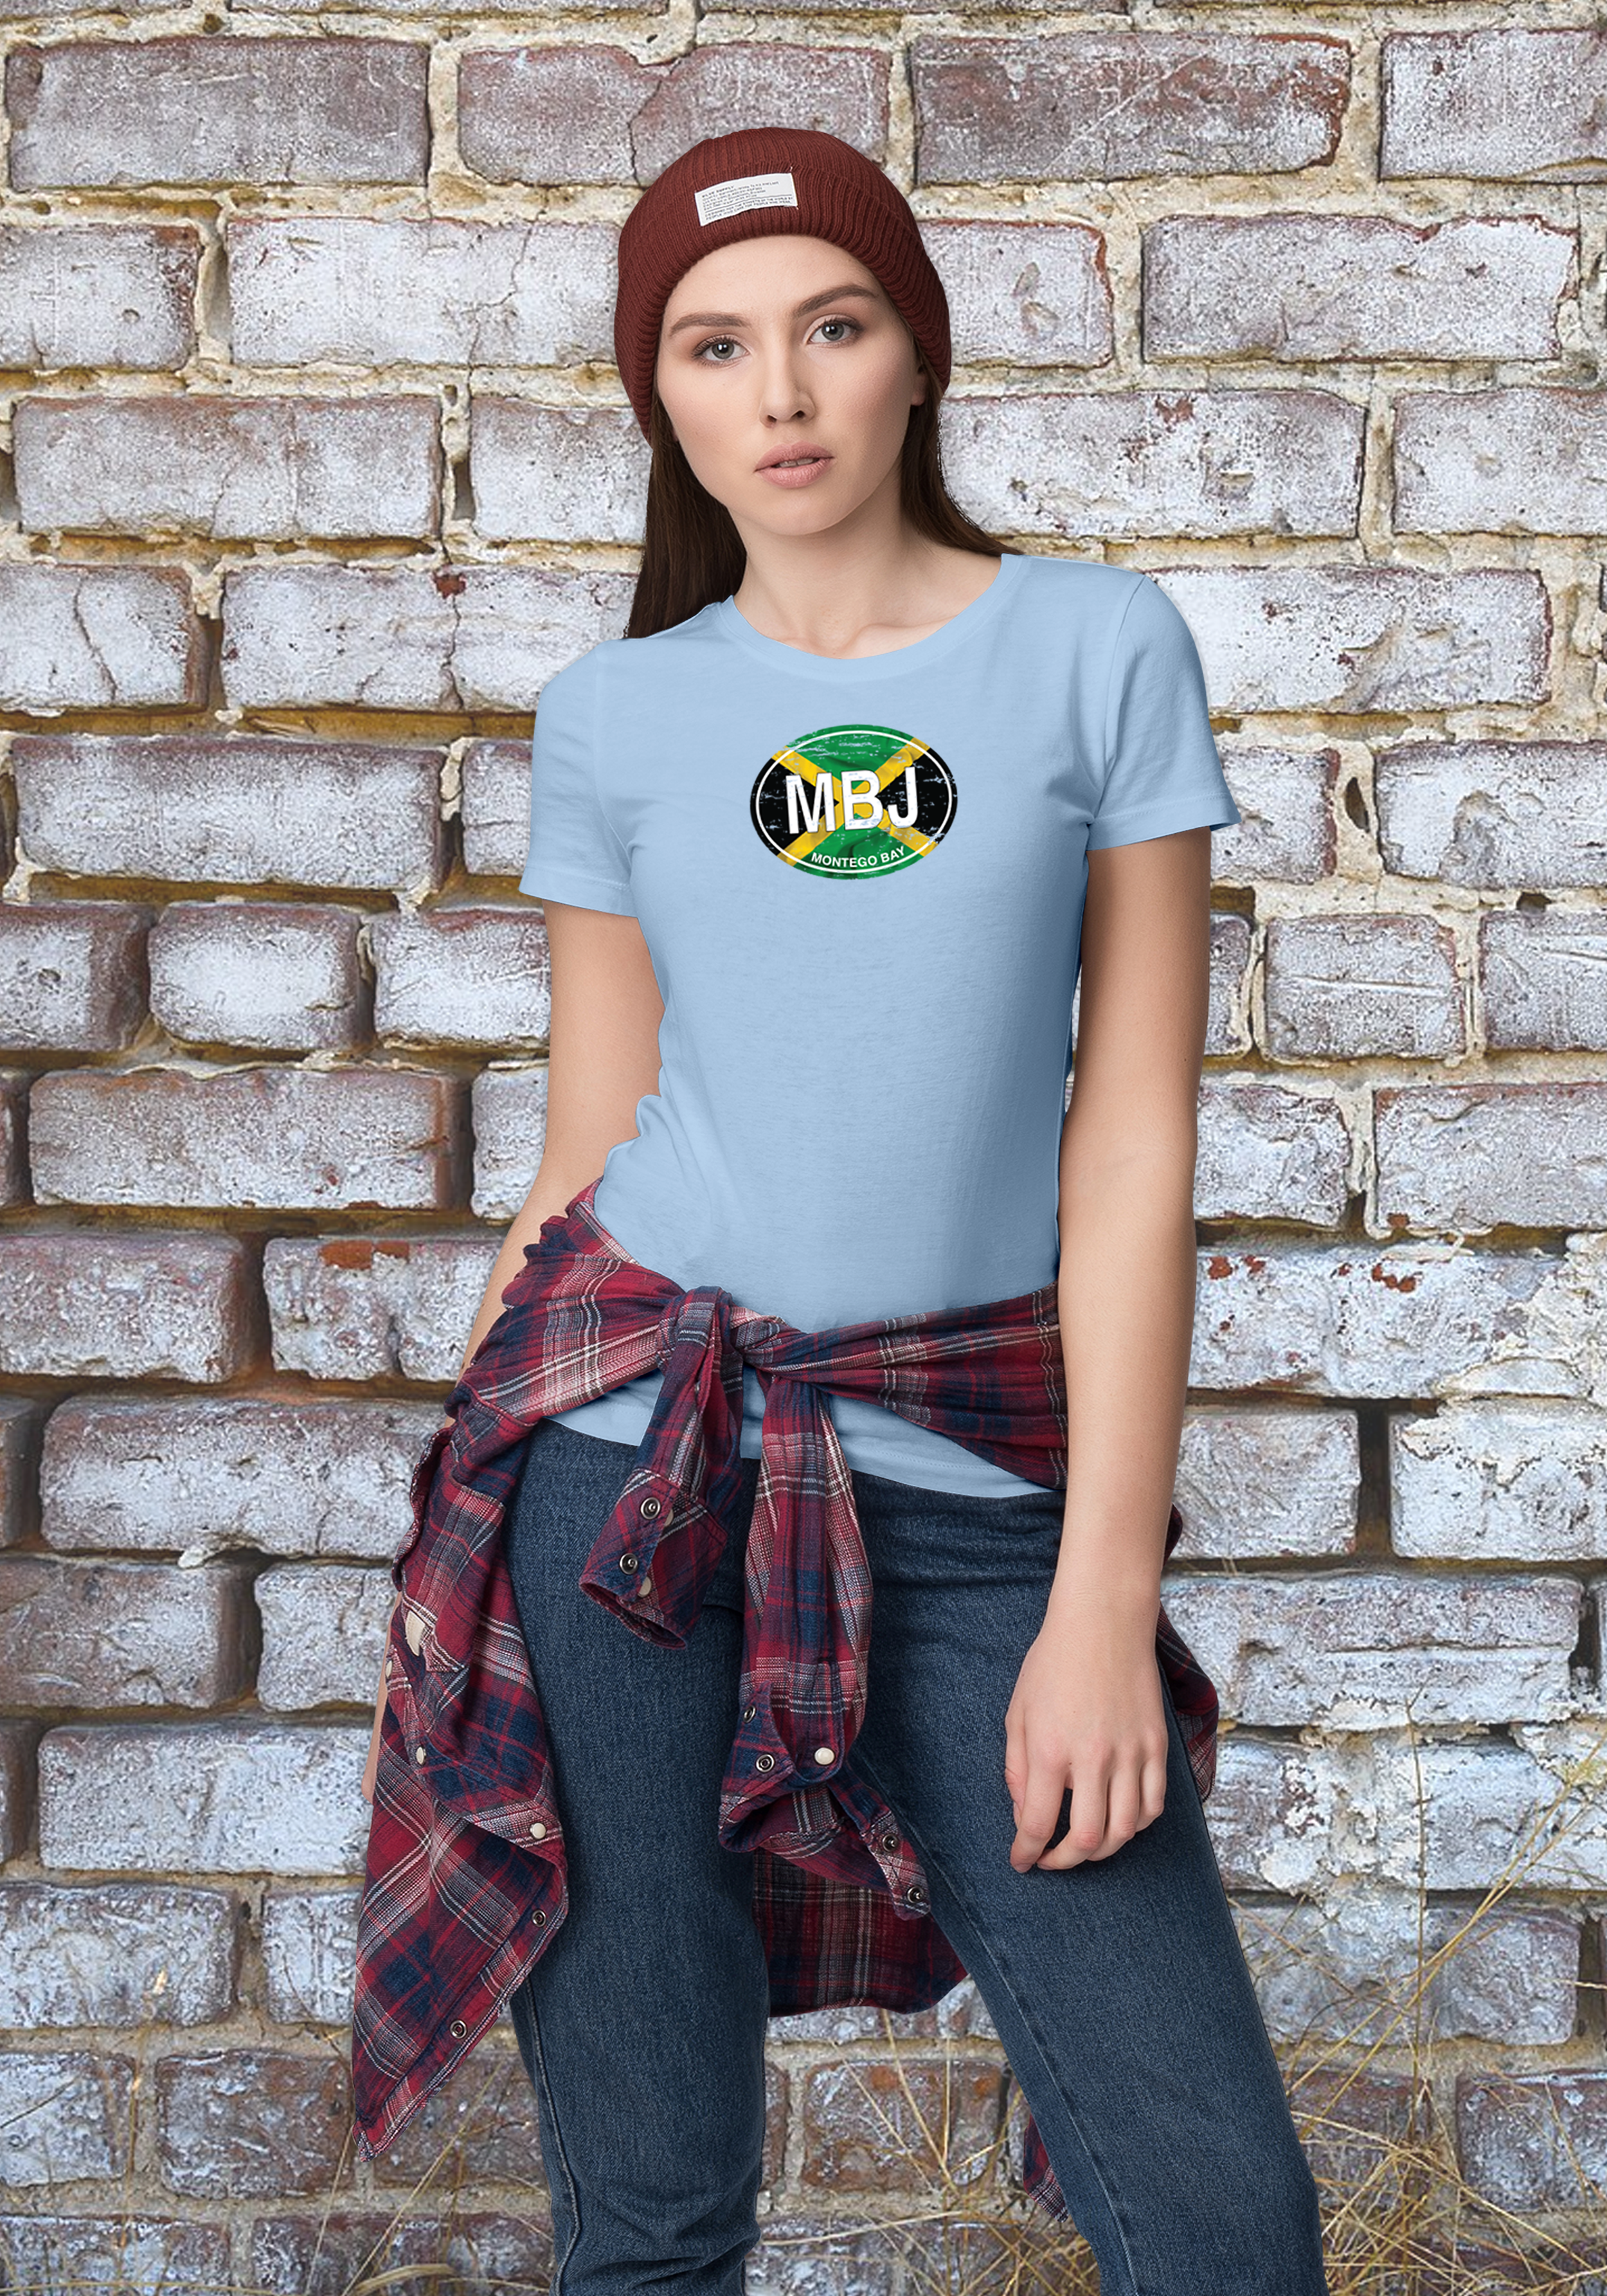 Montego Bay Women's Flag T-Shirt Souvenirs - My Destination Location